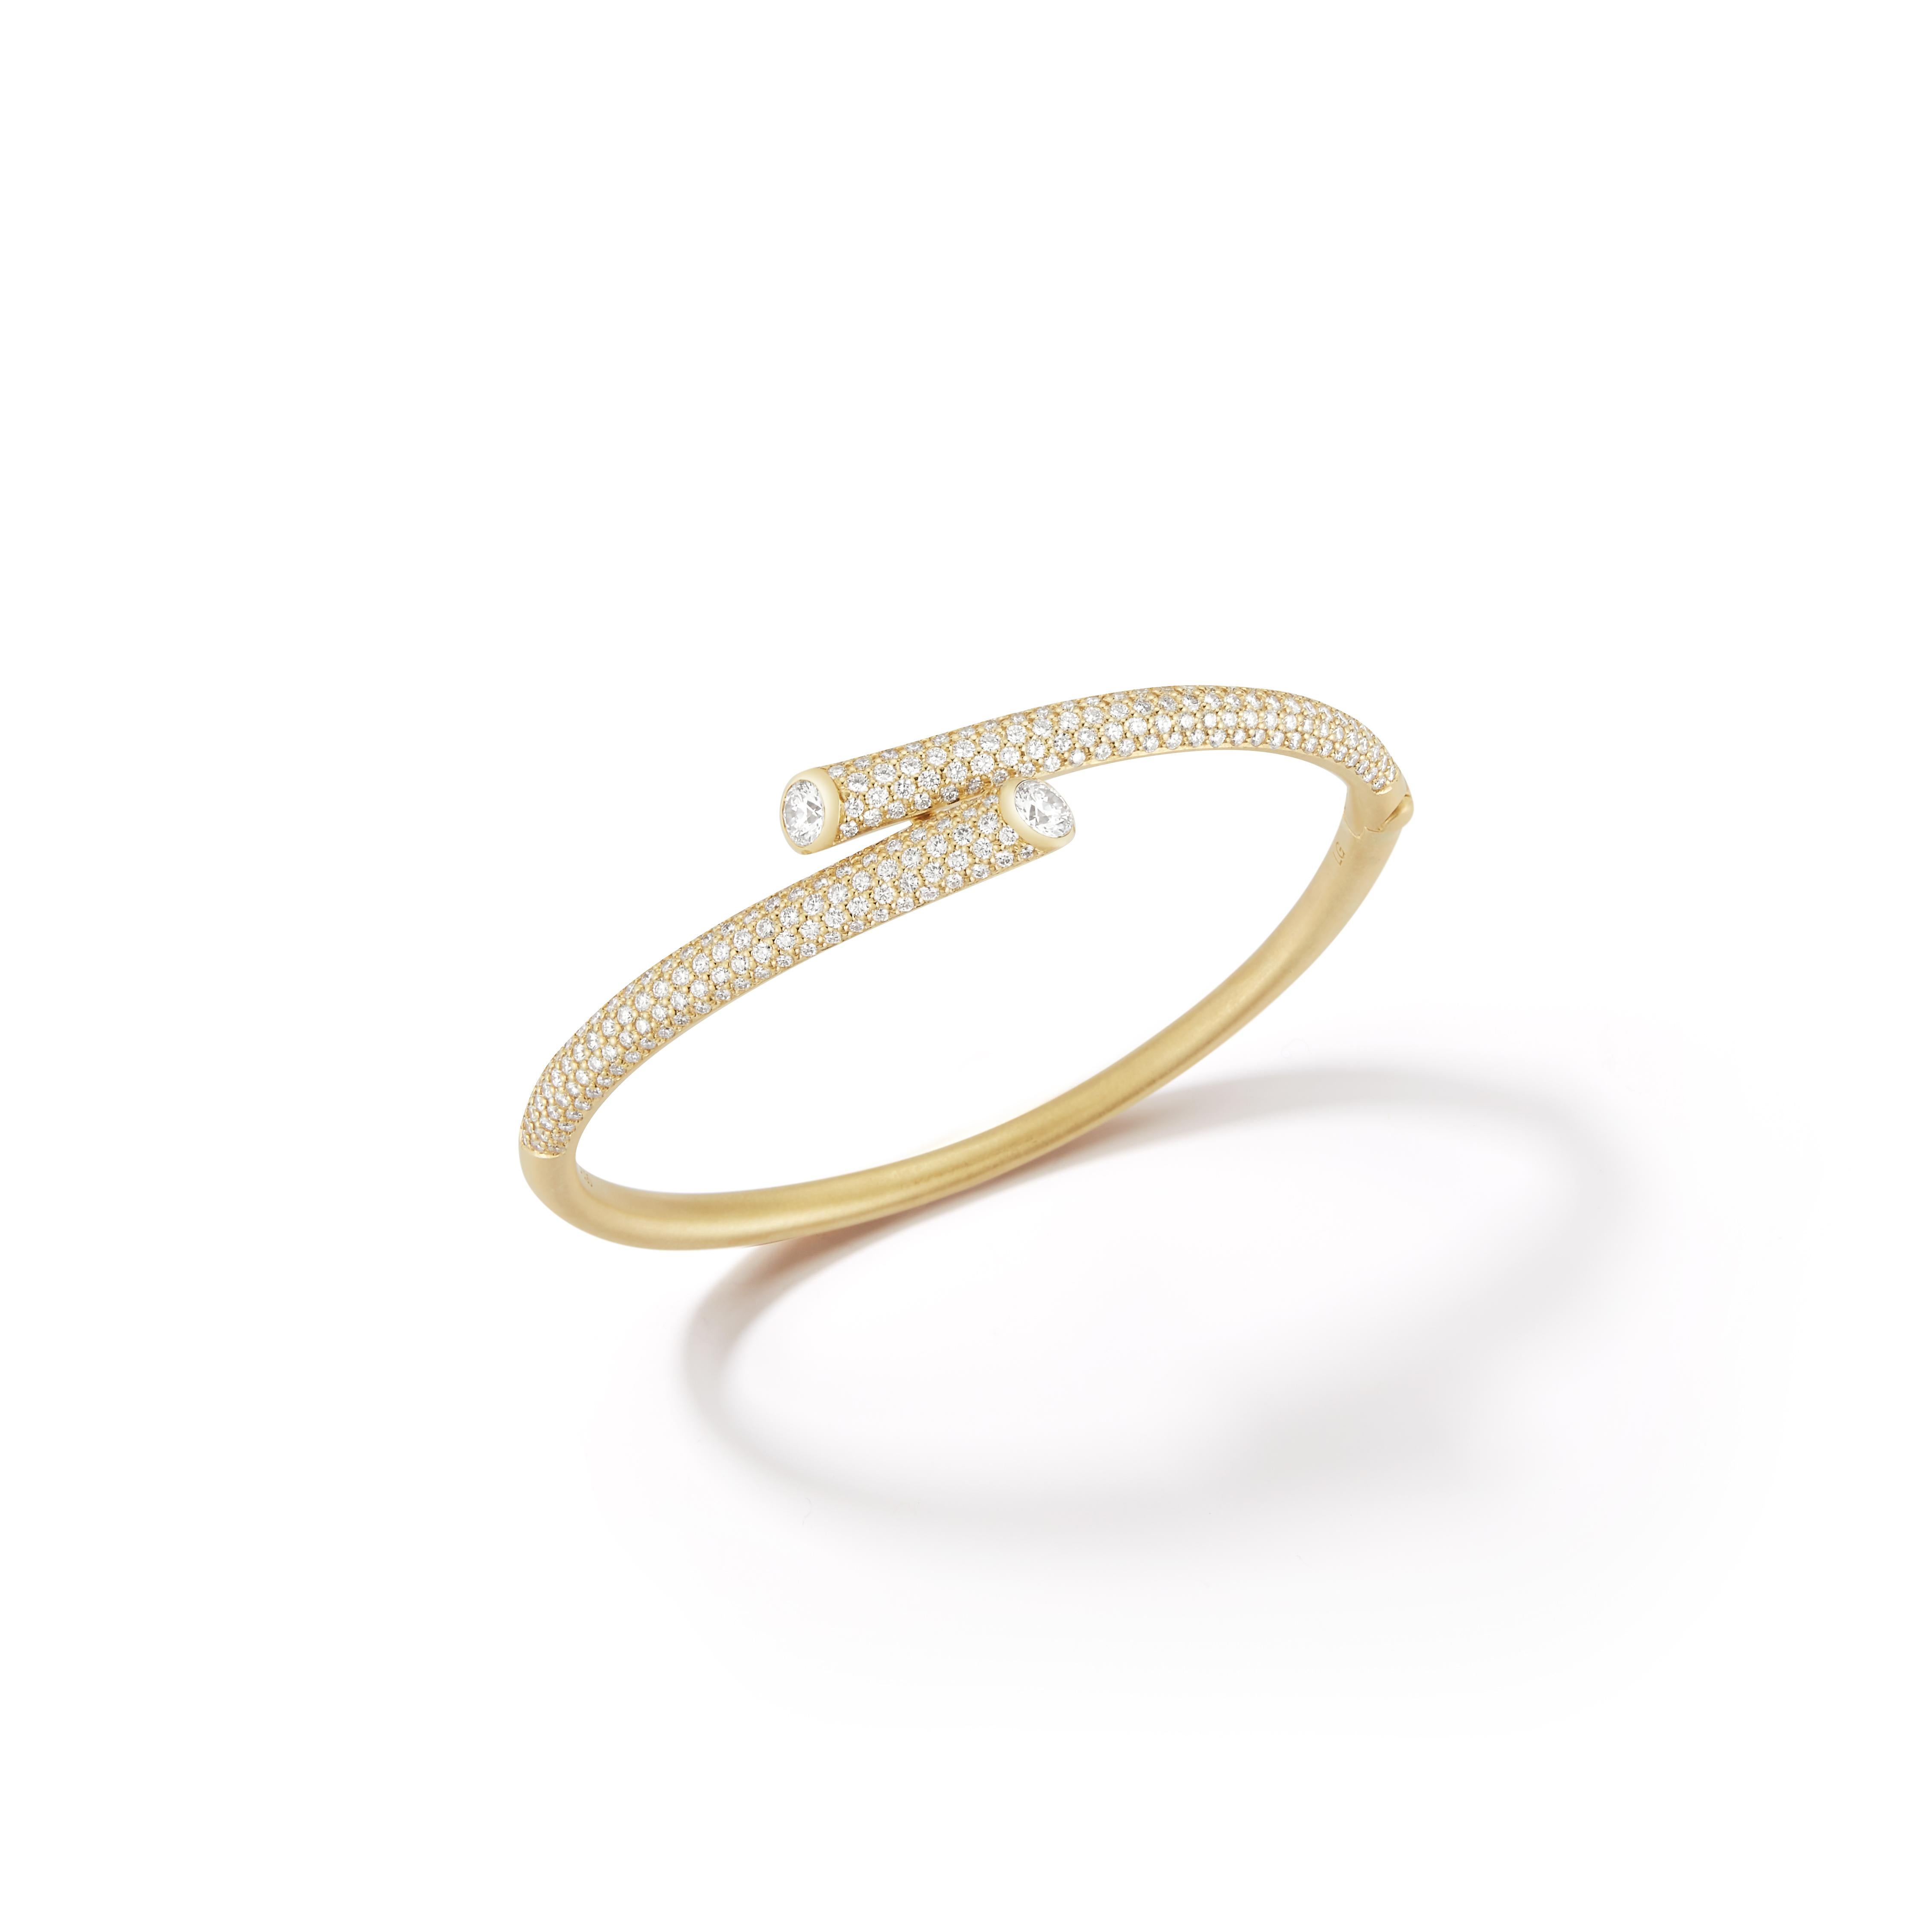 Carelle Whirl transforme l'énergie et le rythme de la ville en essentiels chics conçus pour naviguer dans les méandres du quotidien avec un sens élevé du style et de la sophistication.

Ce bracelet en or jaune 18 carats met en valeur deux diamants